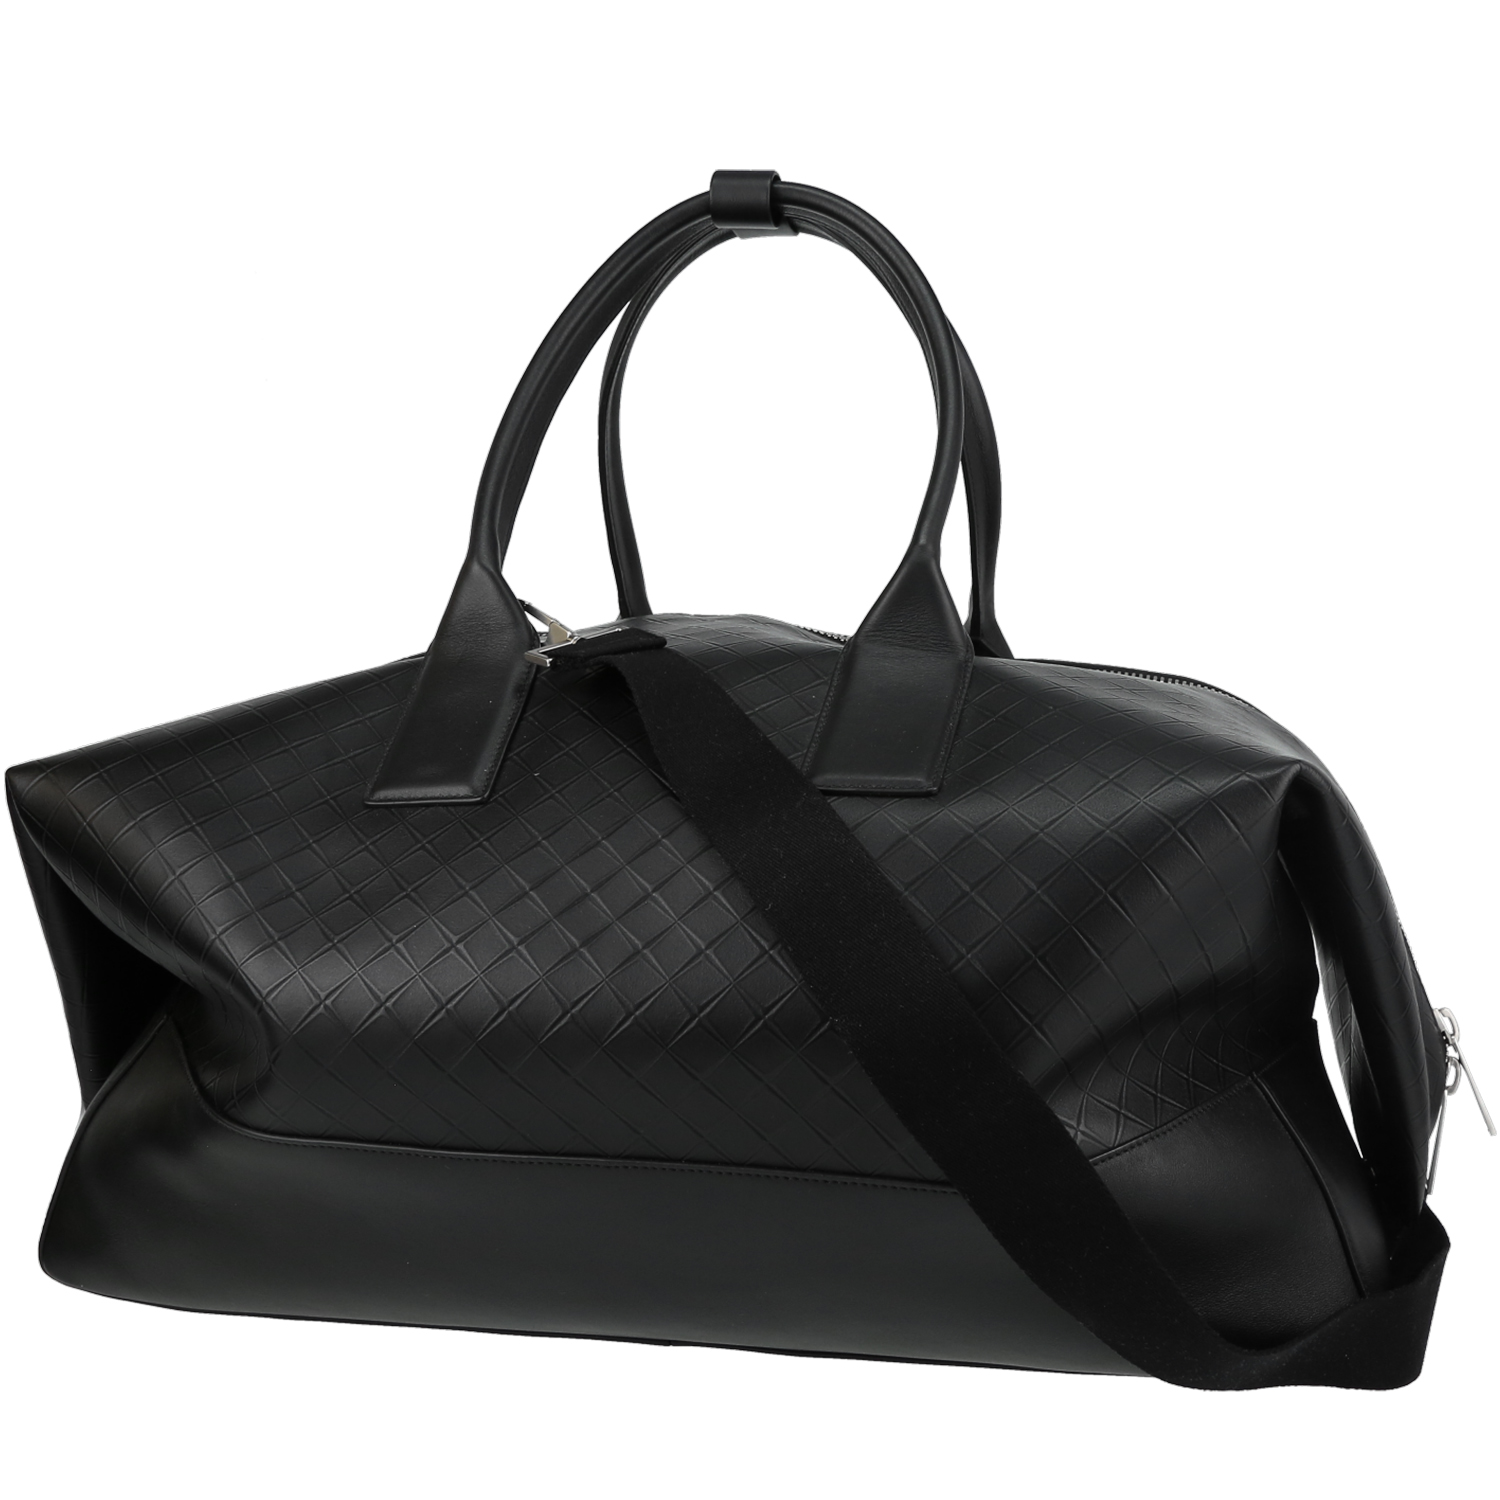 The Attico Bags for Women - Poshmark